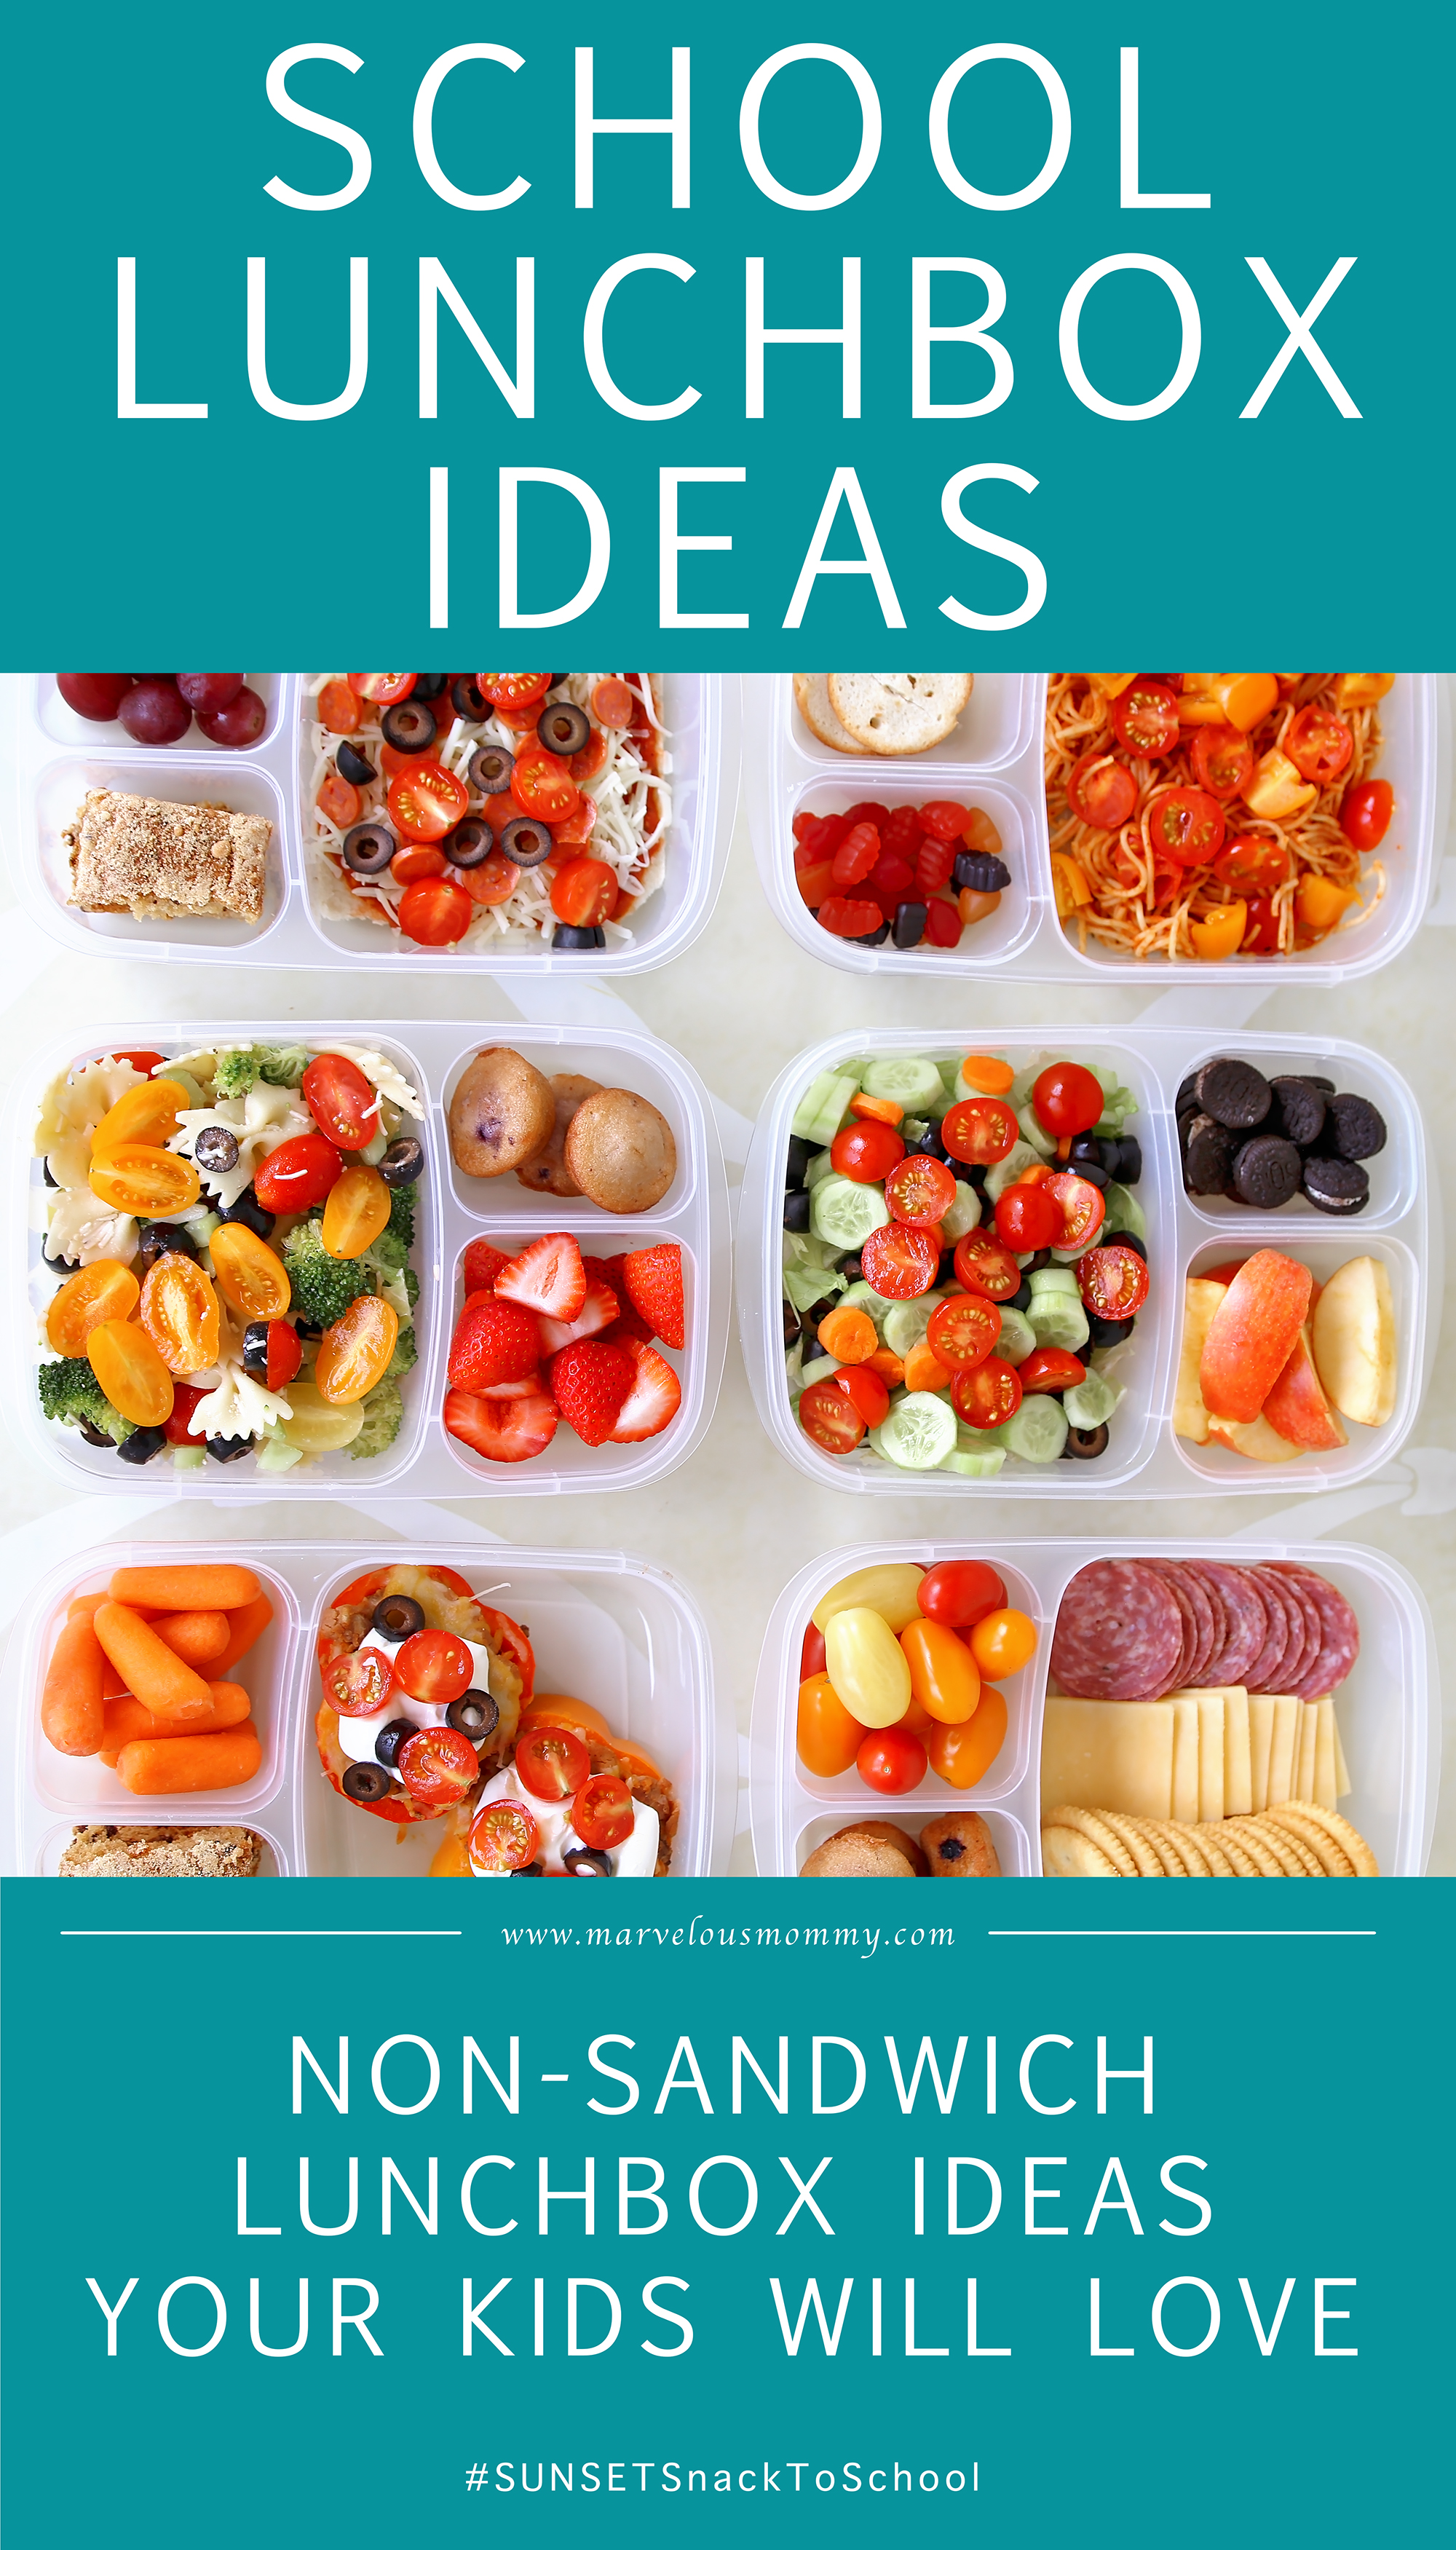 School LunchBox Ideas